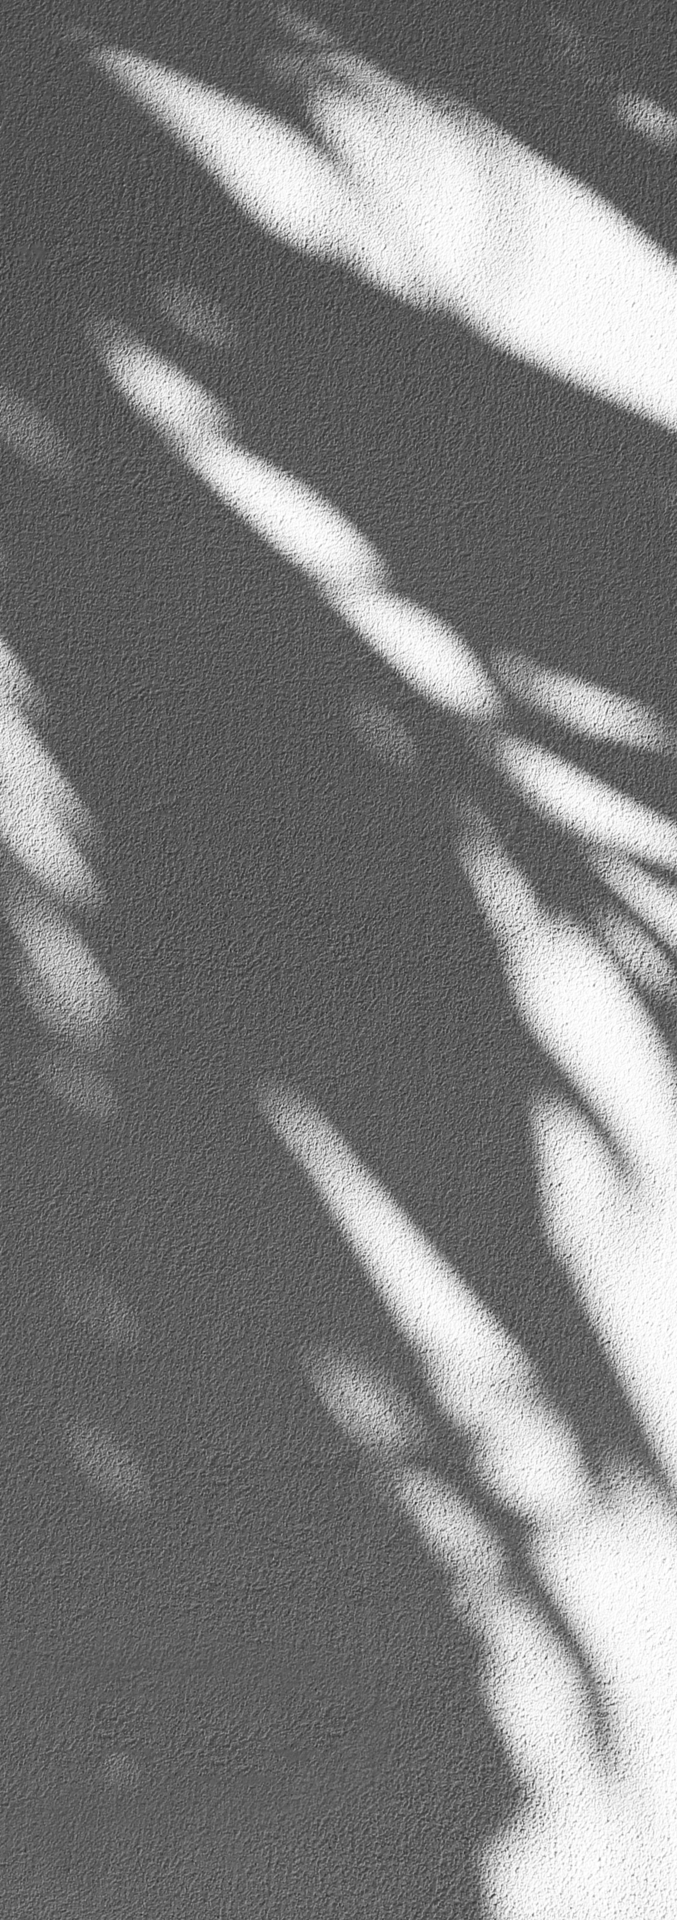 Shadow of a palm tree leaf